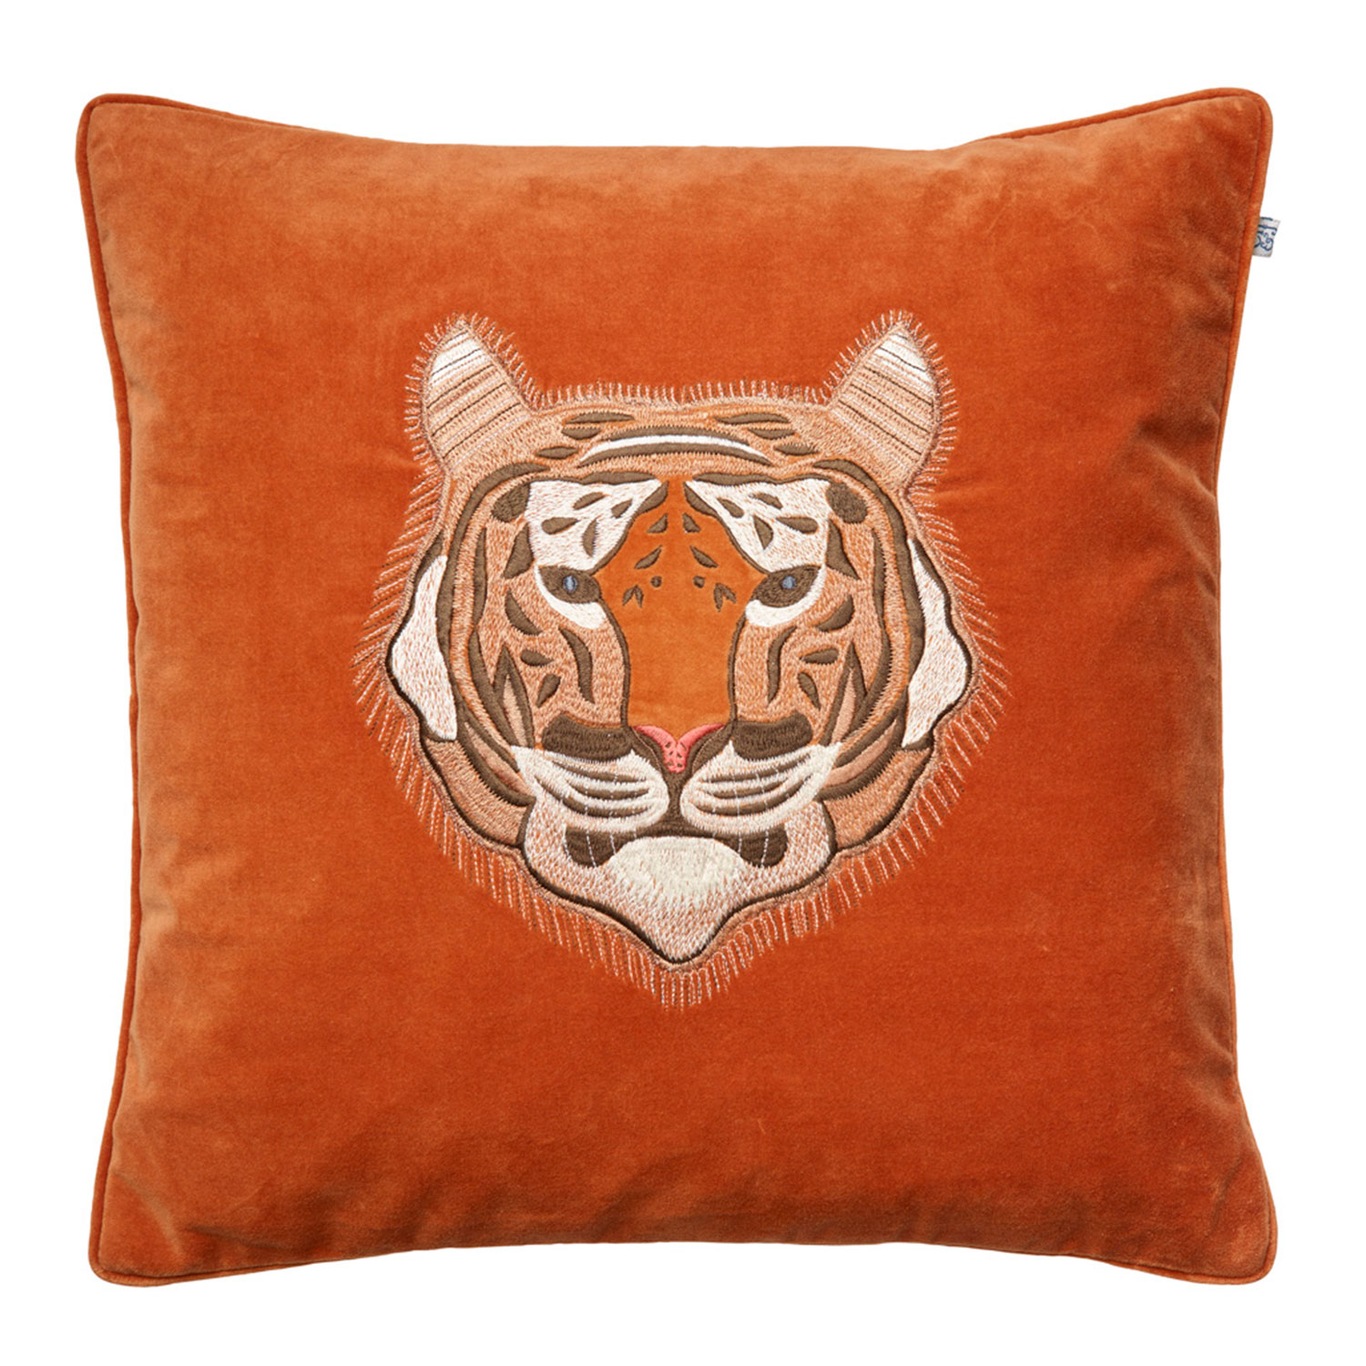 Embroidered Tiger Velvet Kussensloop 50 x 50 cm, Oranje